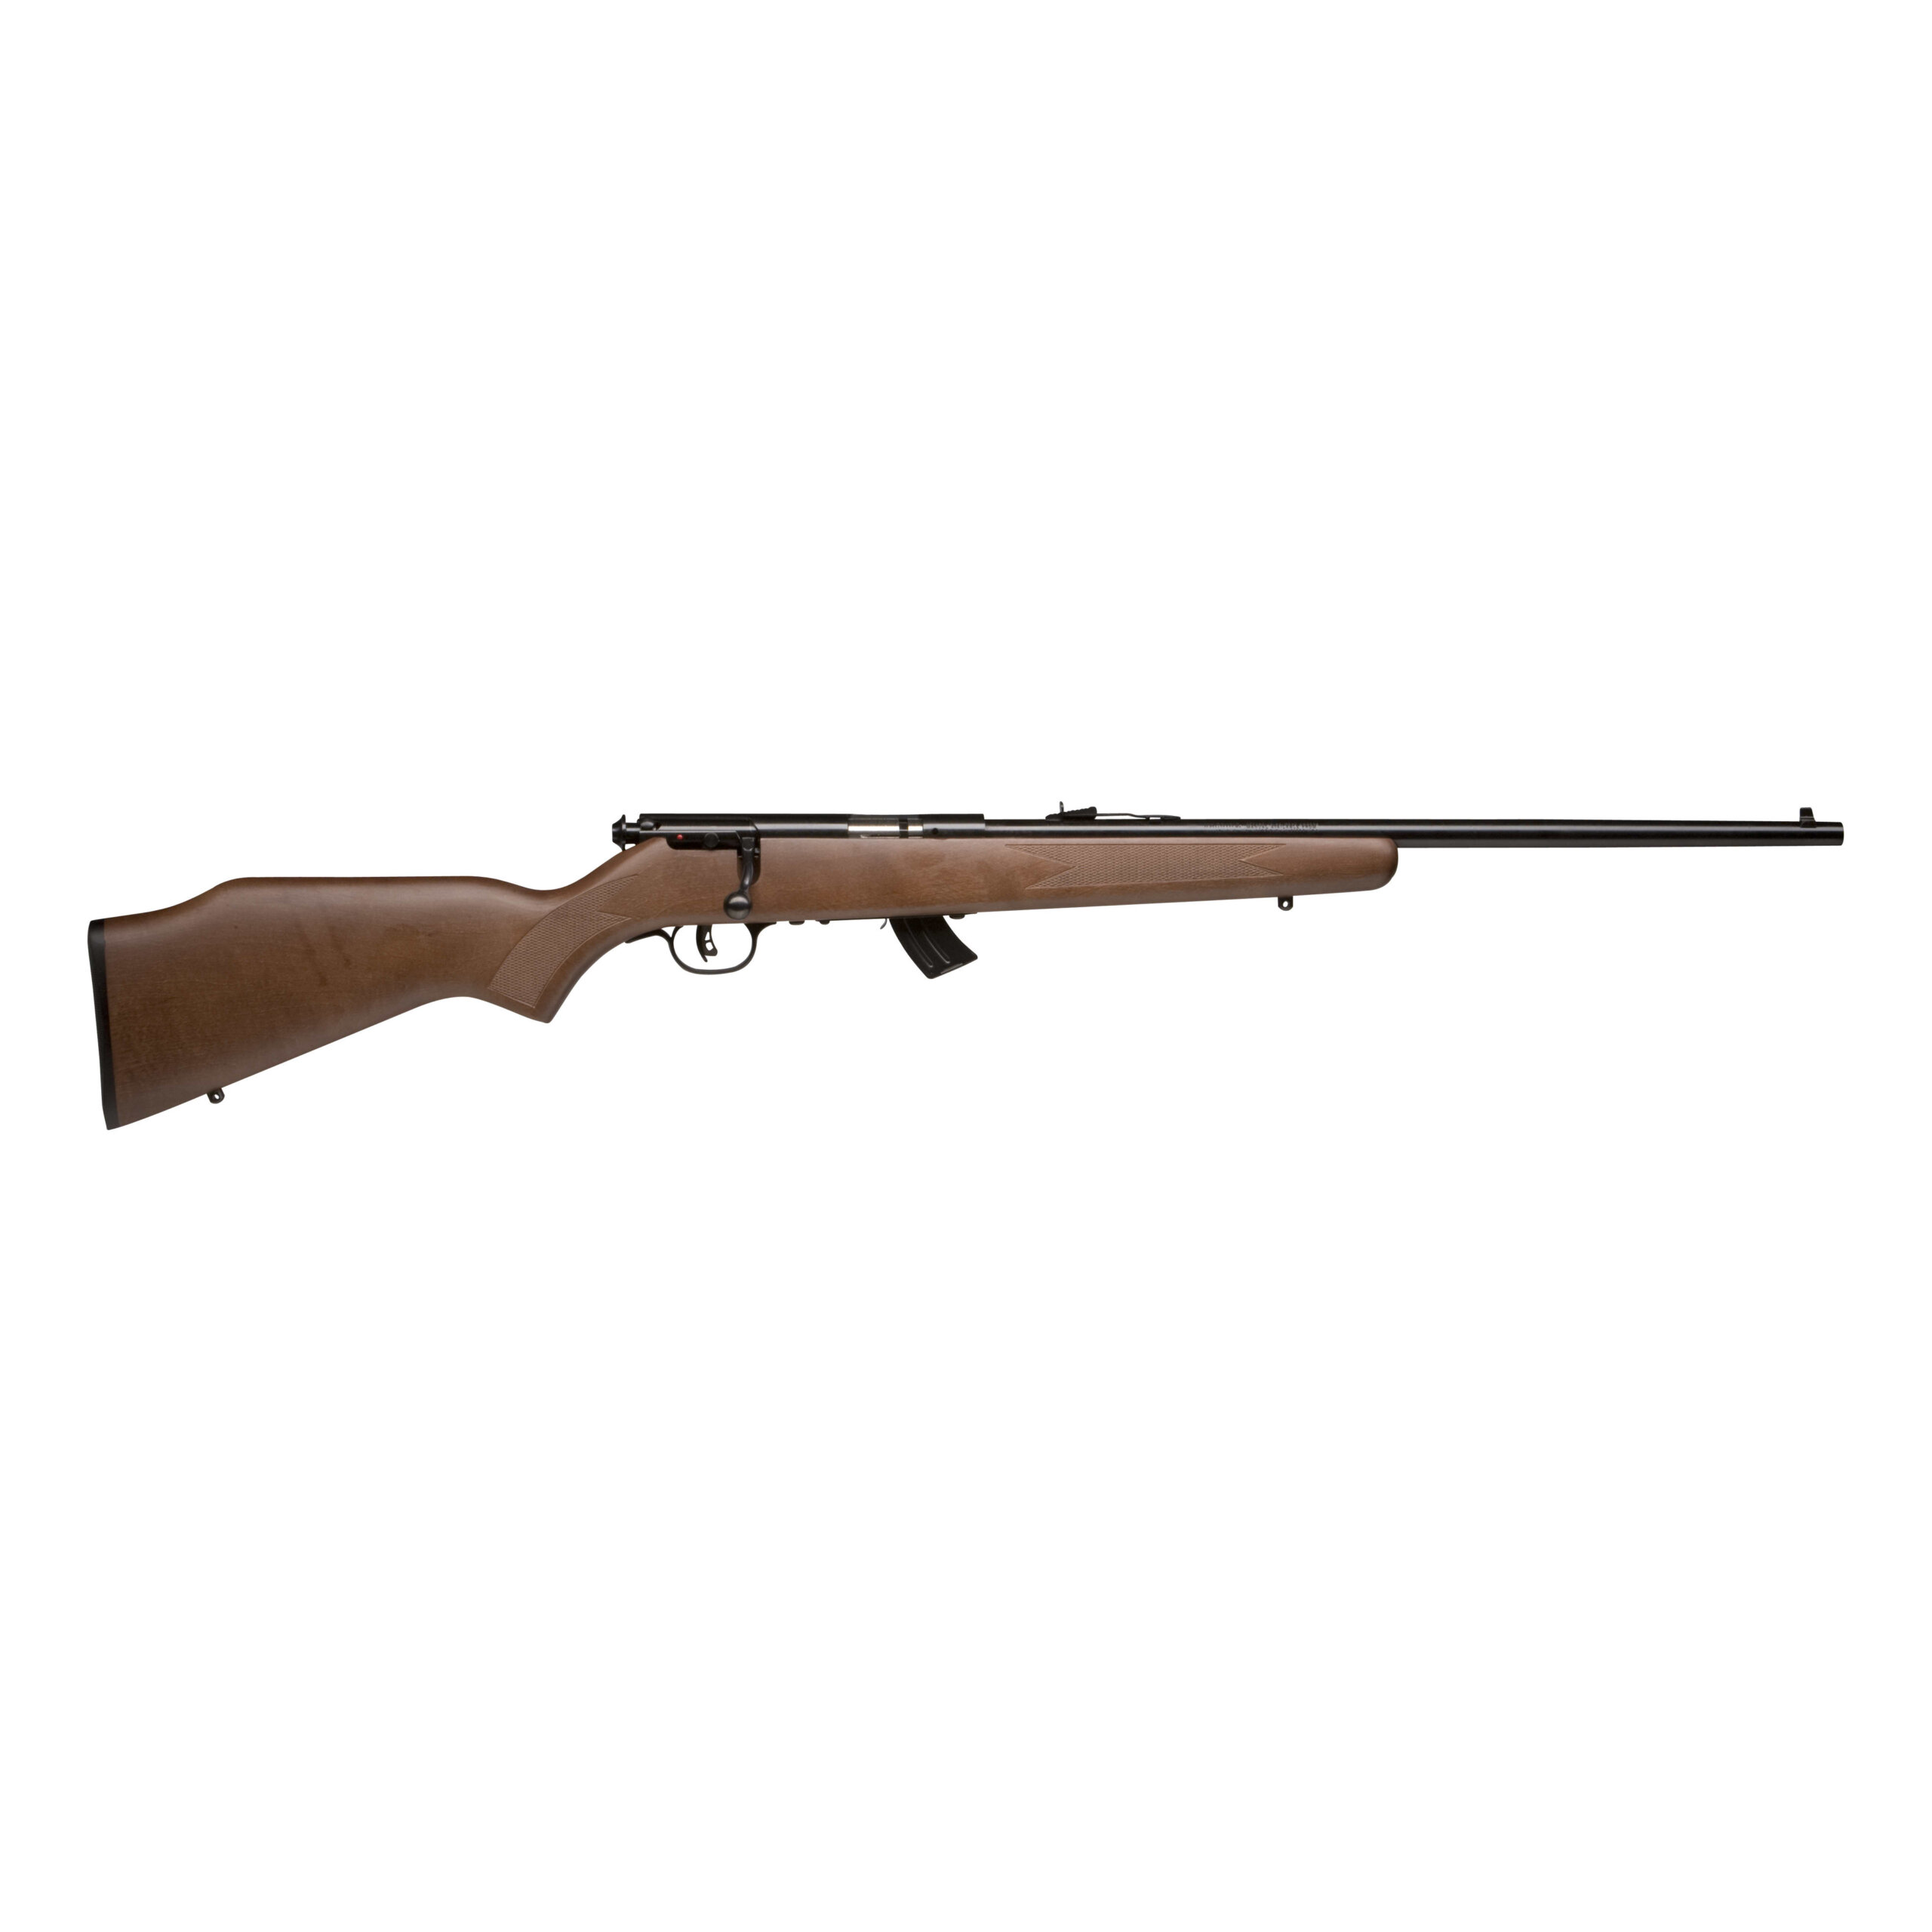 Savage 20700 Mark II G Bolt Action Rifle 22 LR, RH, 21 in, Satin Blued, Wood Stk, 10+1 Rnd, Accu-Trigger, 0685-0638